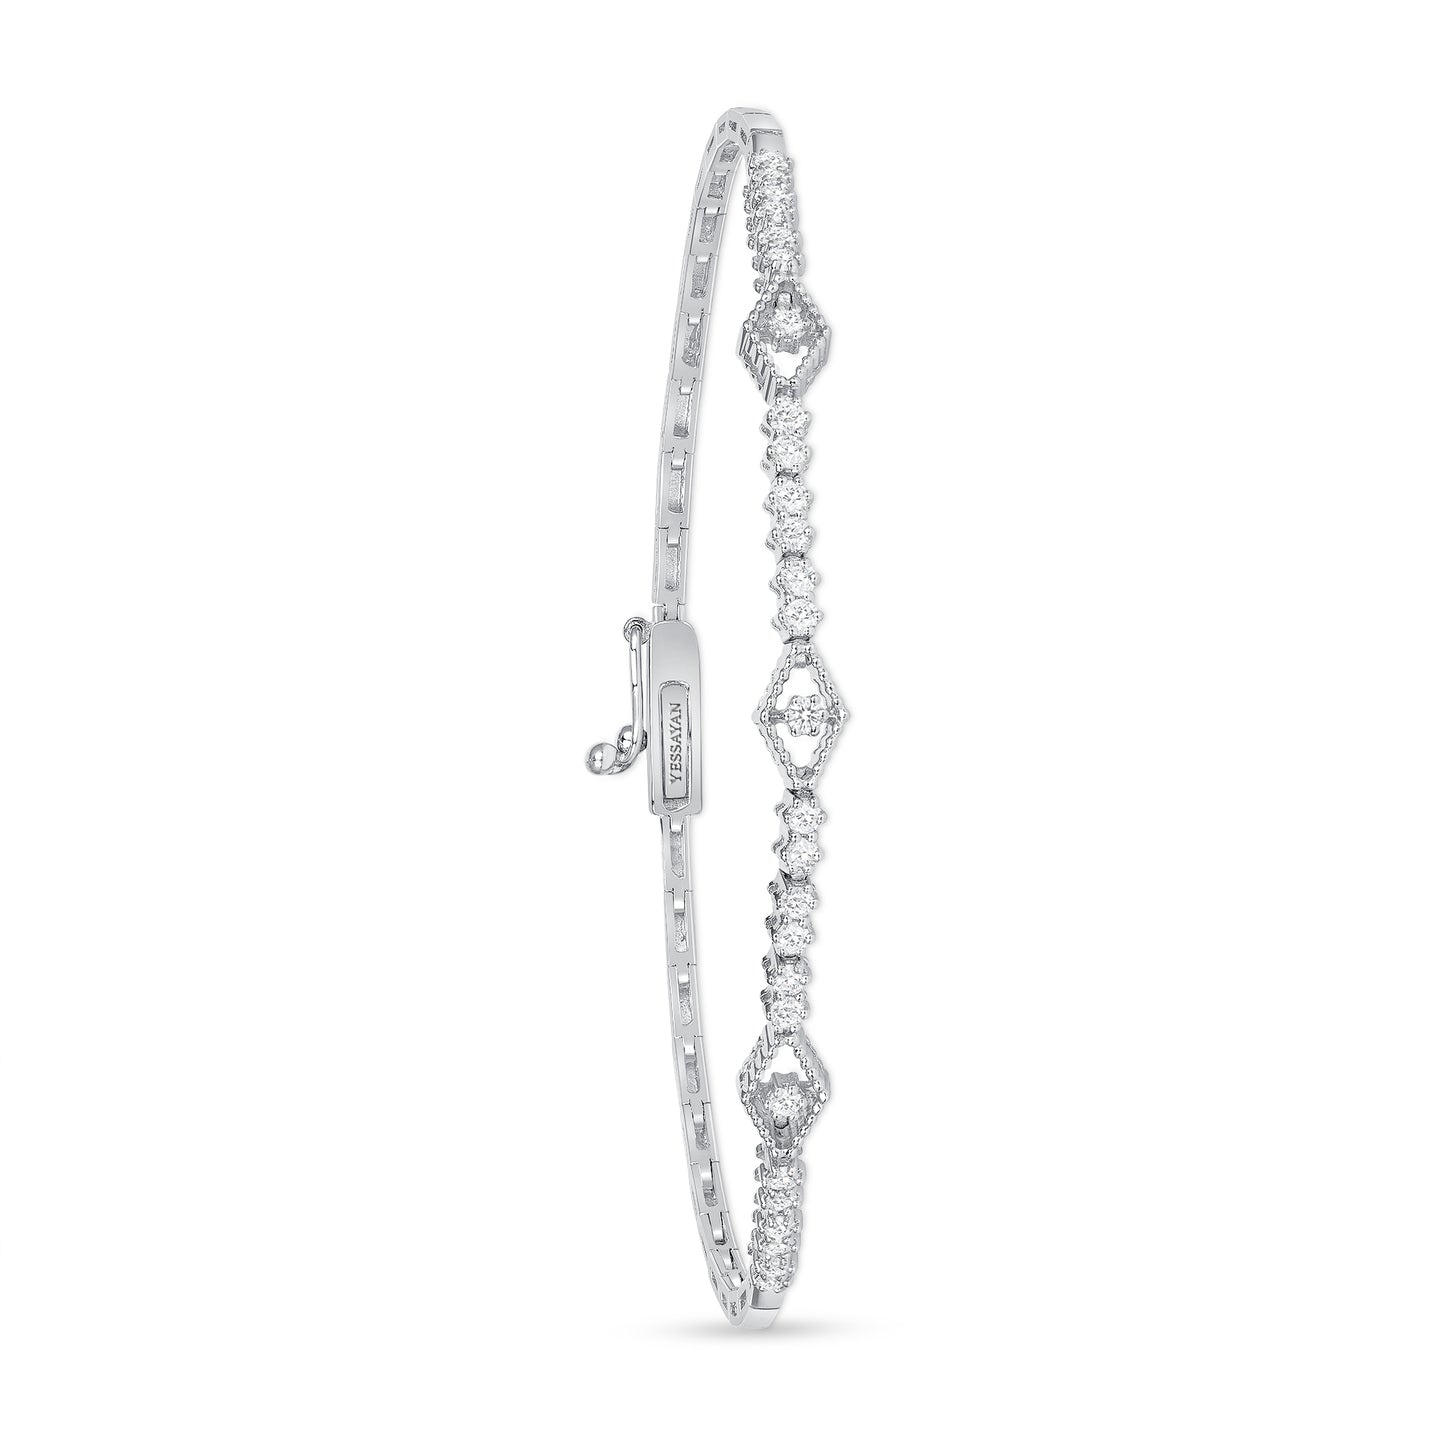 The Patterned Diamond Link Bracelet